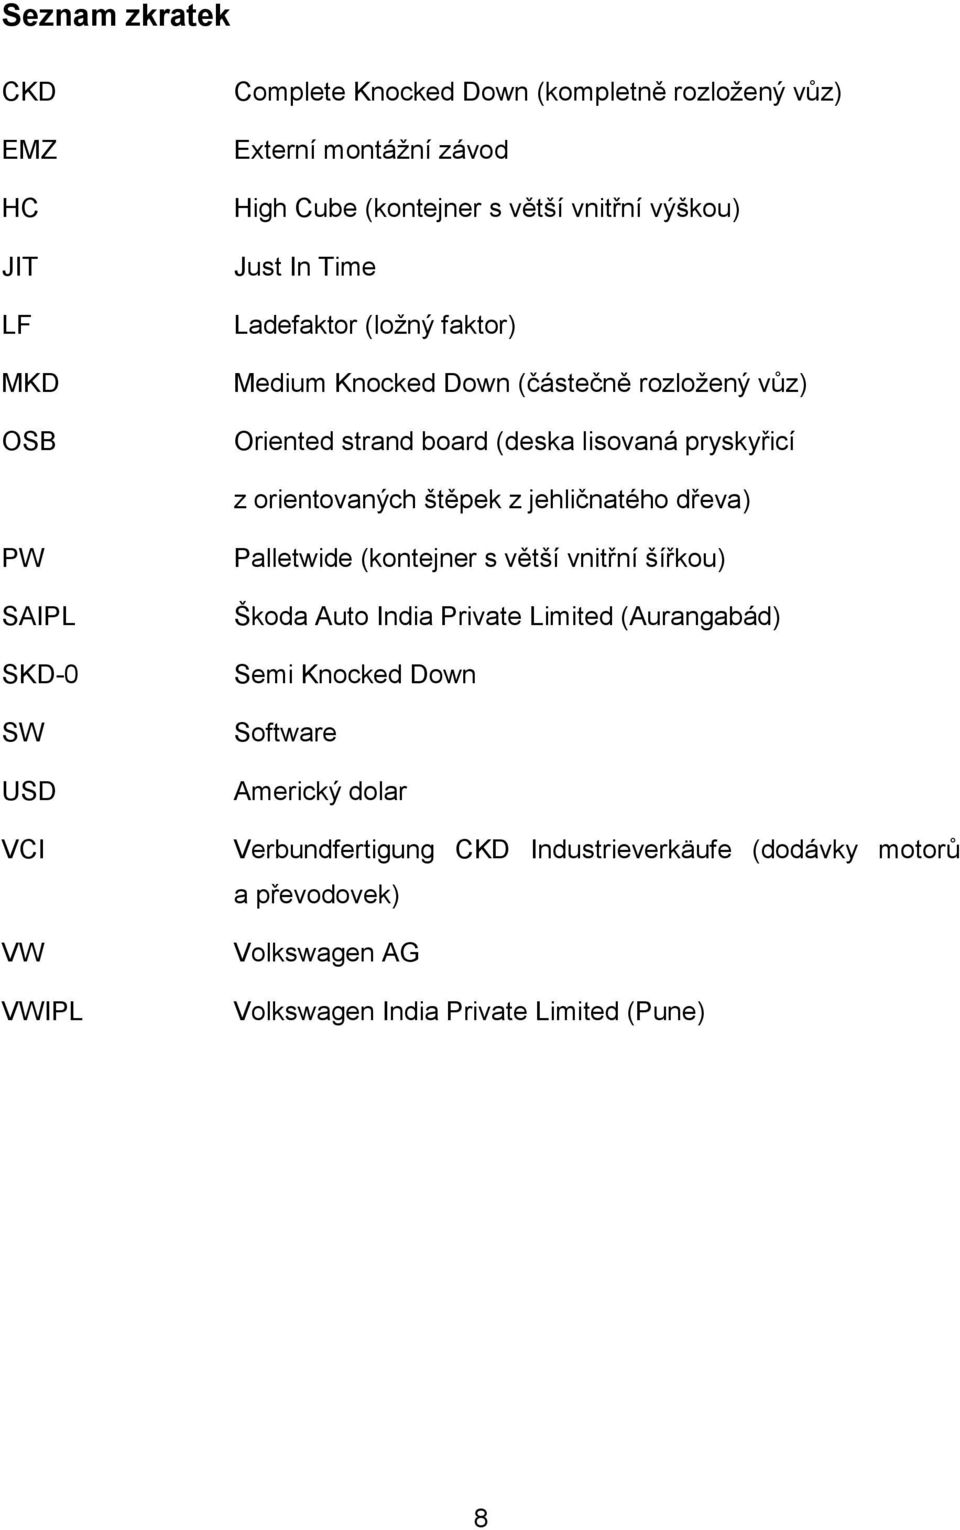 z jehličnatého dřeva) PW SAIPL SKD-0 SW USD VCI VW VWIPL Palletwide (kontejner s větší vnitřní šířkou) Škoda Auto India Private Limited (Aurangabád) Semi